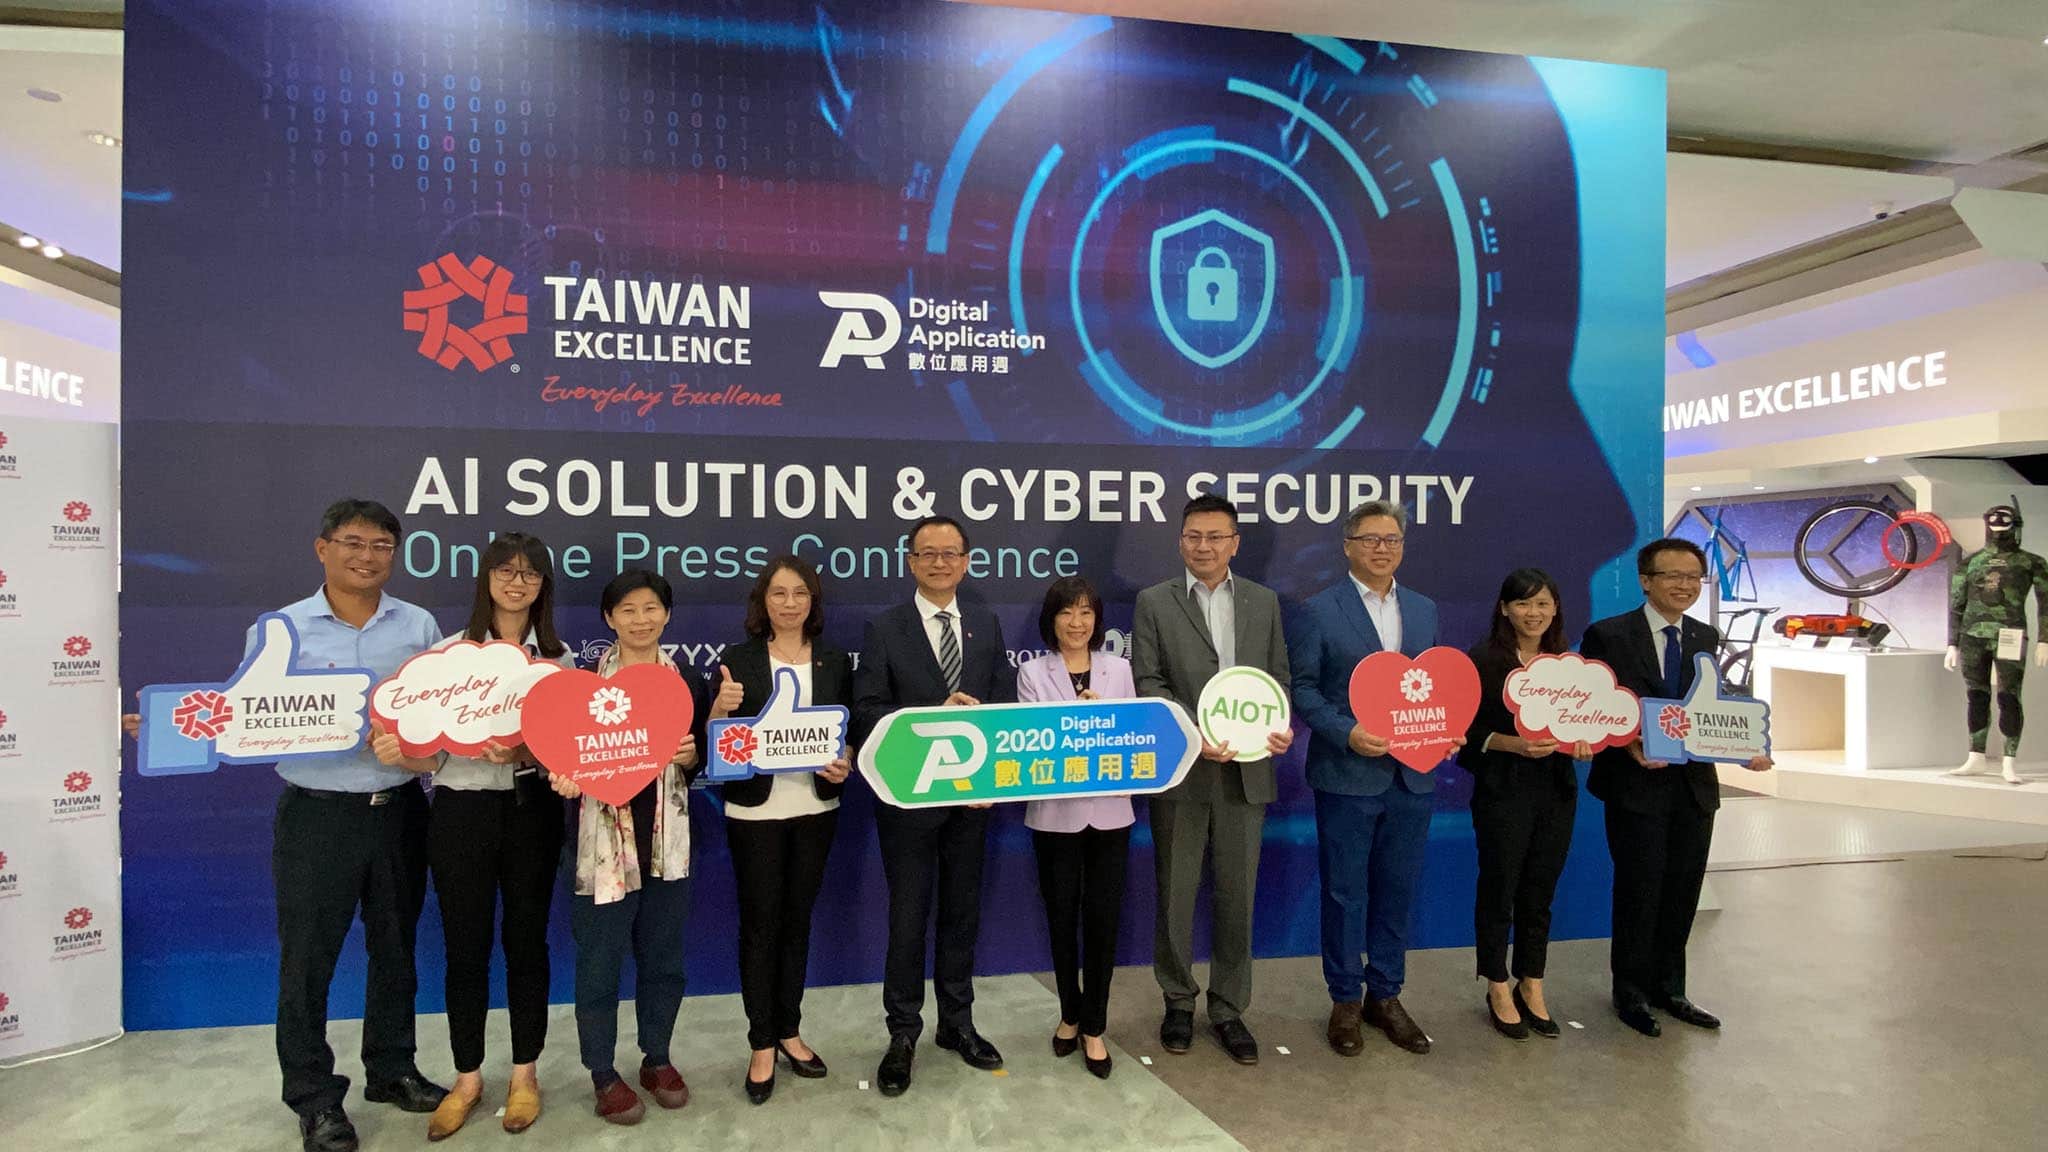 Nắm bắt xu hướng toàn cầu, Taiwan Excellence mang đến các giải pháp trí tuệ nhân tạo và an ninh mạng tiên tiến